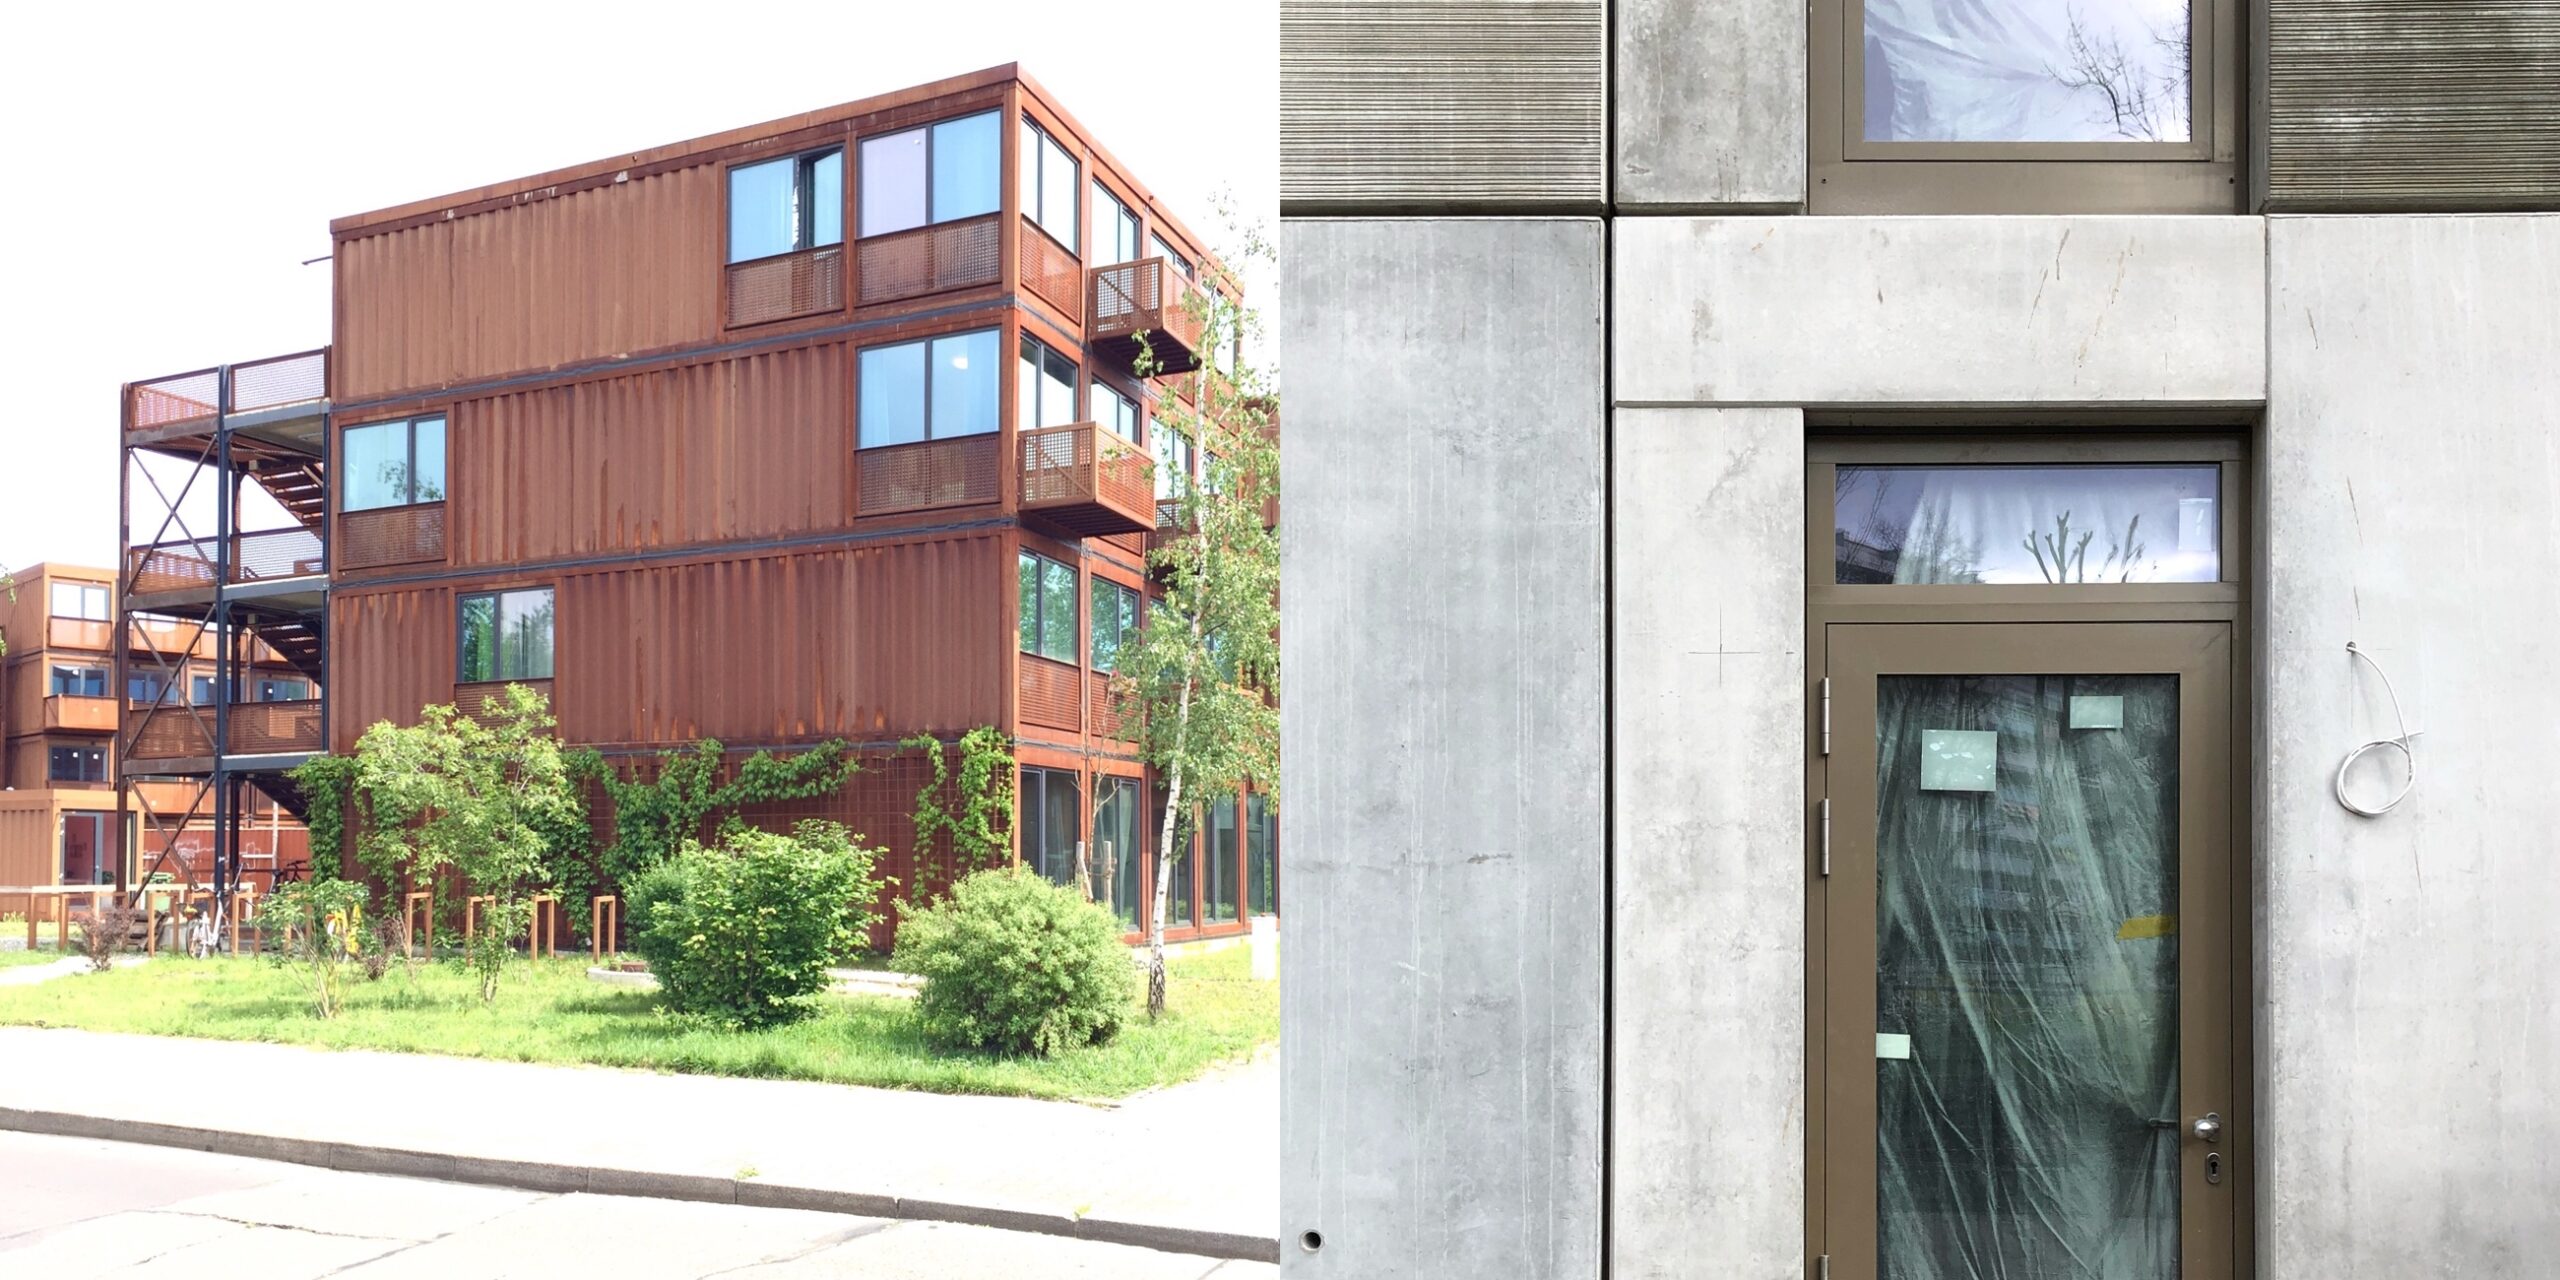 Modulares Bauen: Beispiele für Stahlmodulbau (links) und Modulbau aus Sichtbeton-Modulen in Berlin-Treptow bzw. Berlin-Köpenick (Fotos: Eric Sturm)